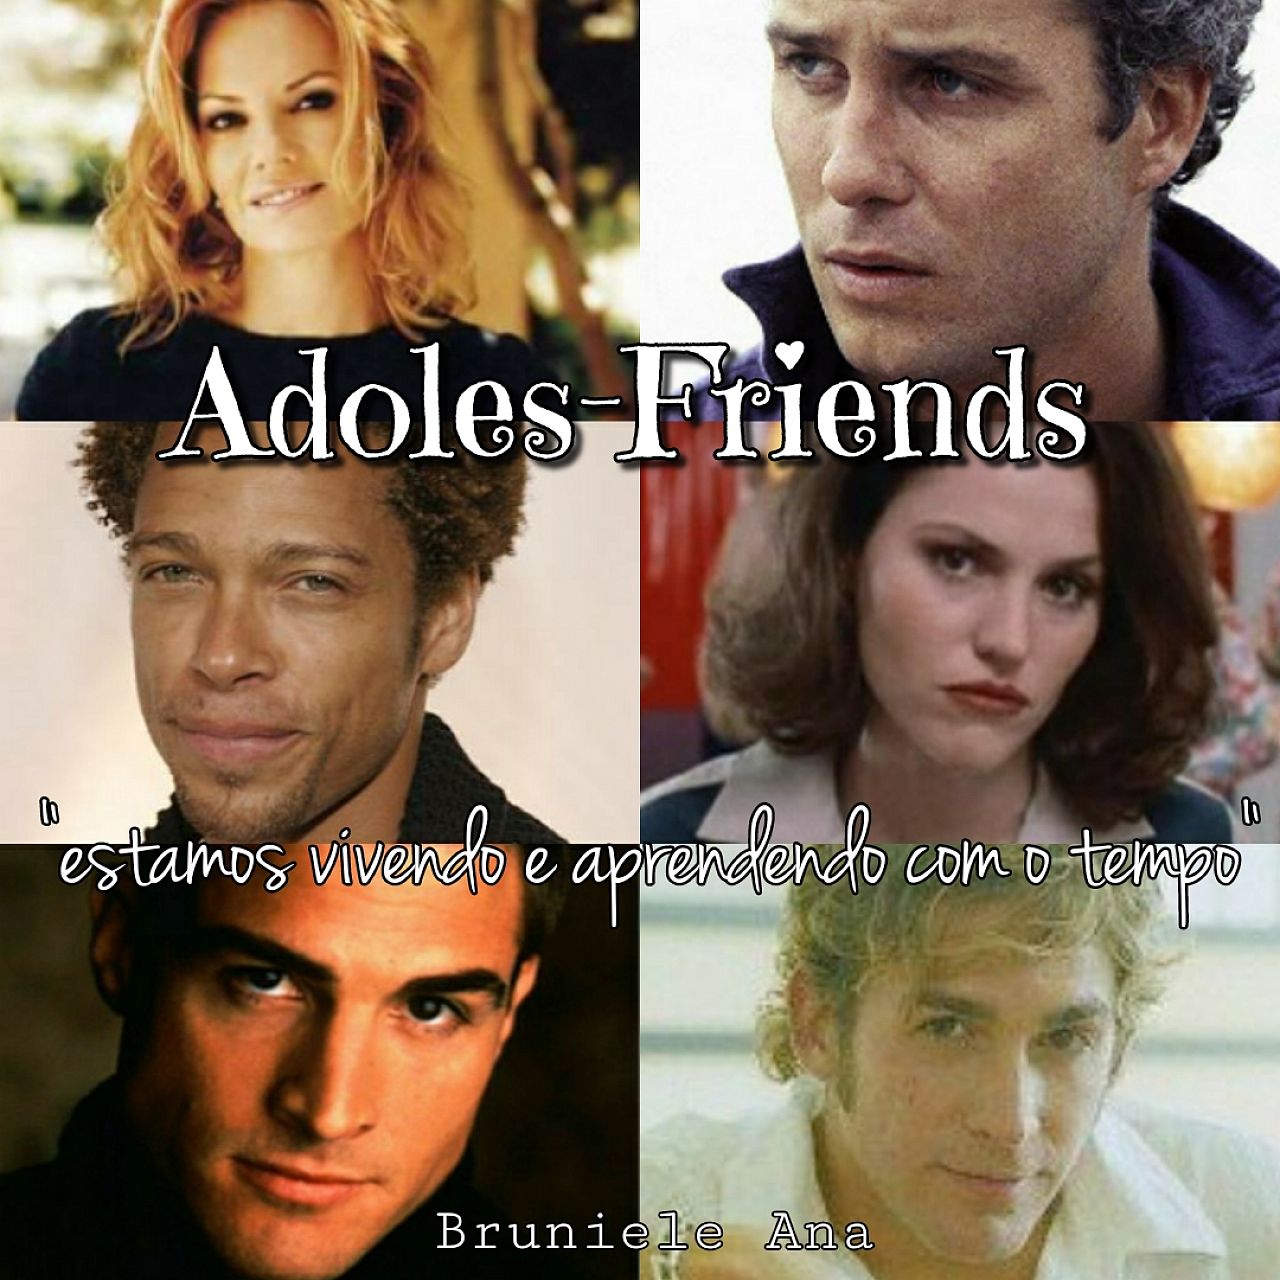 AdolesFriends